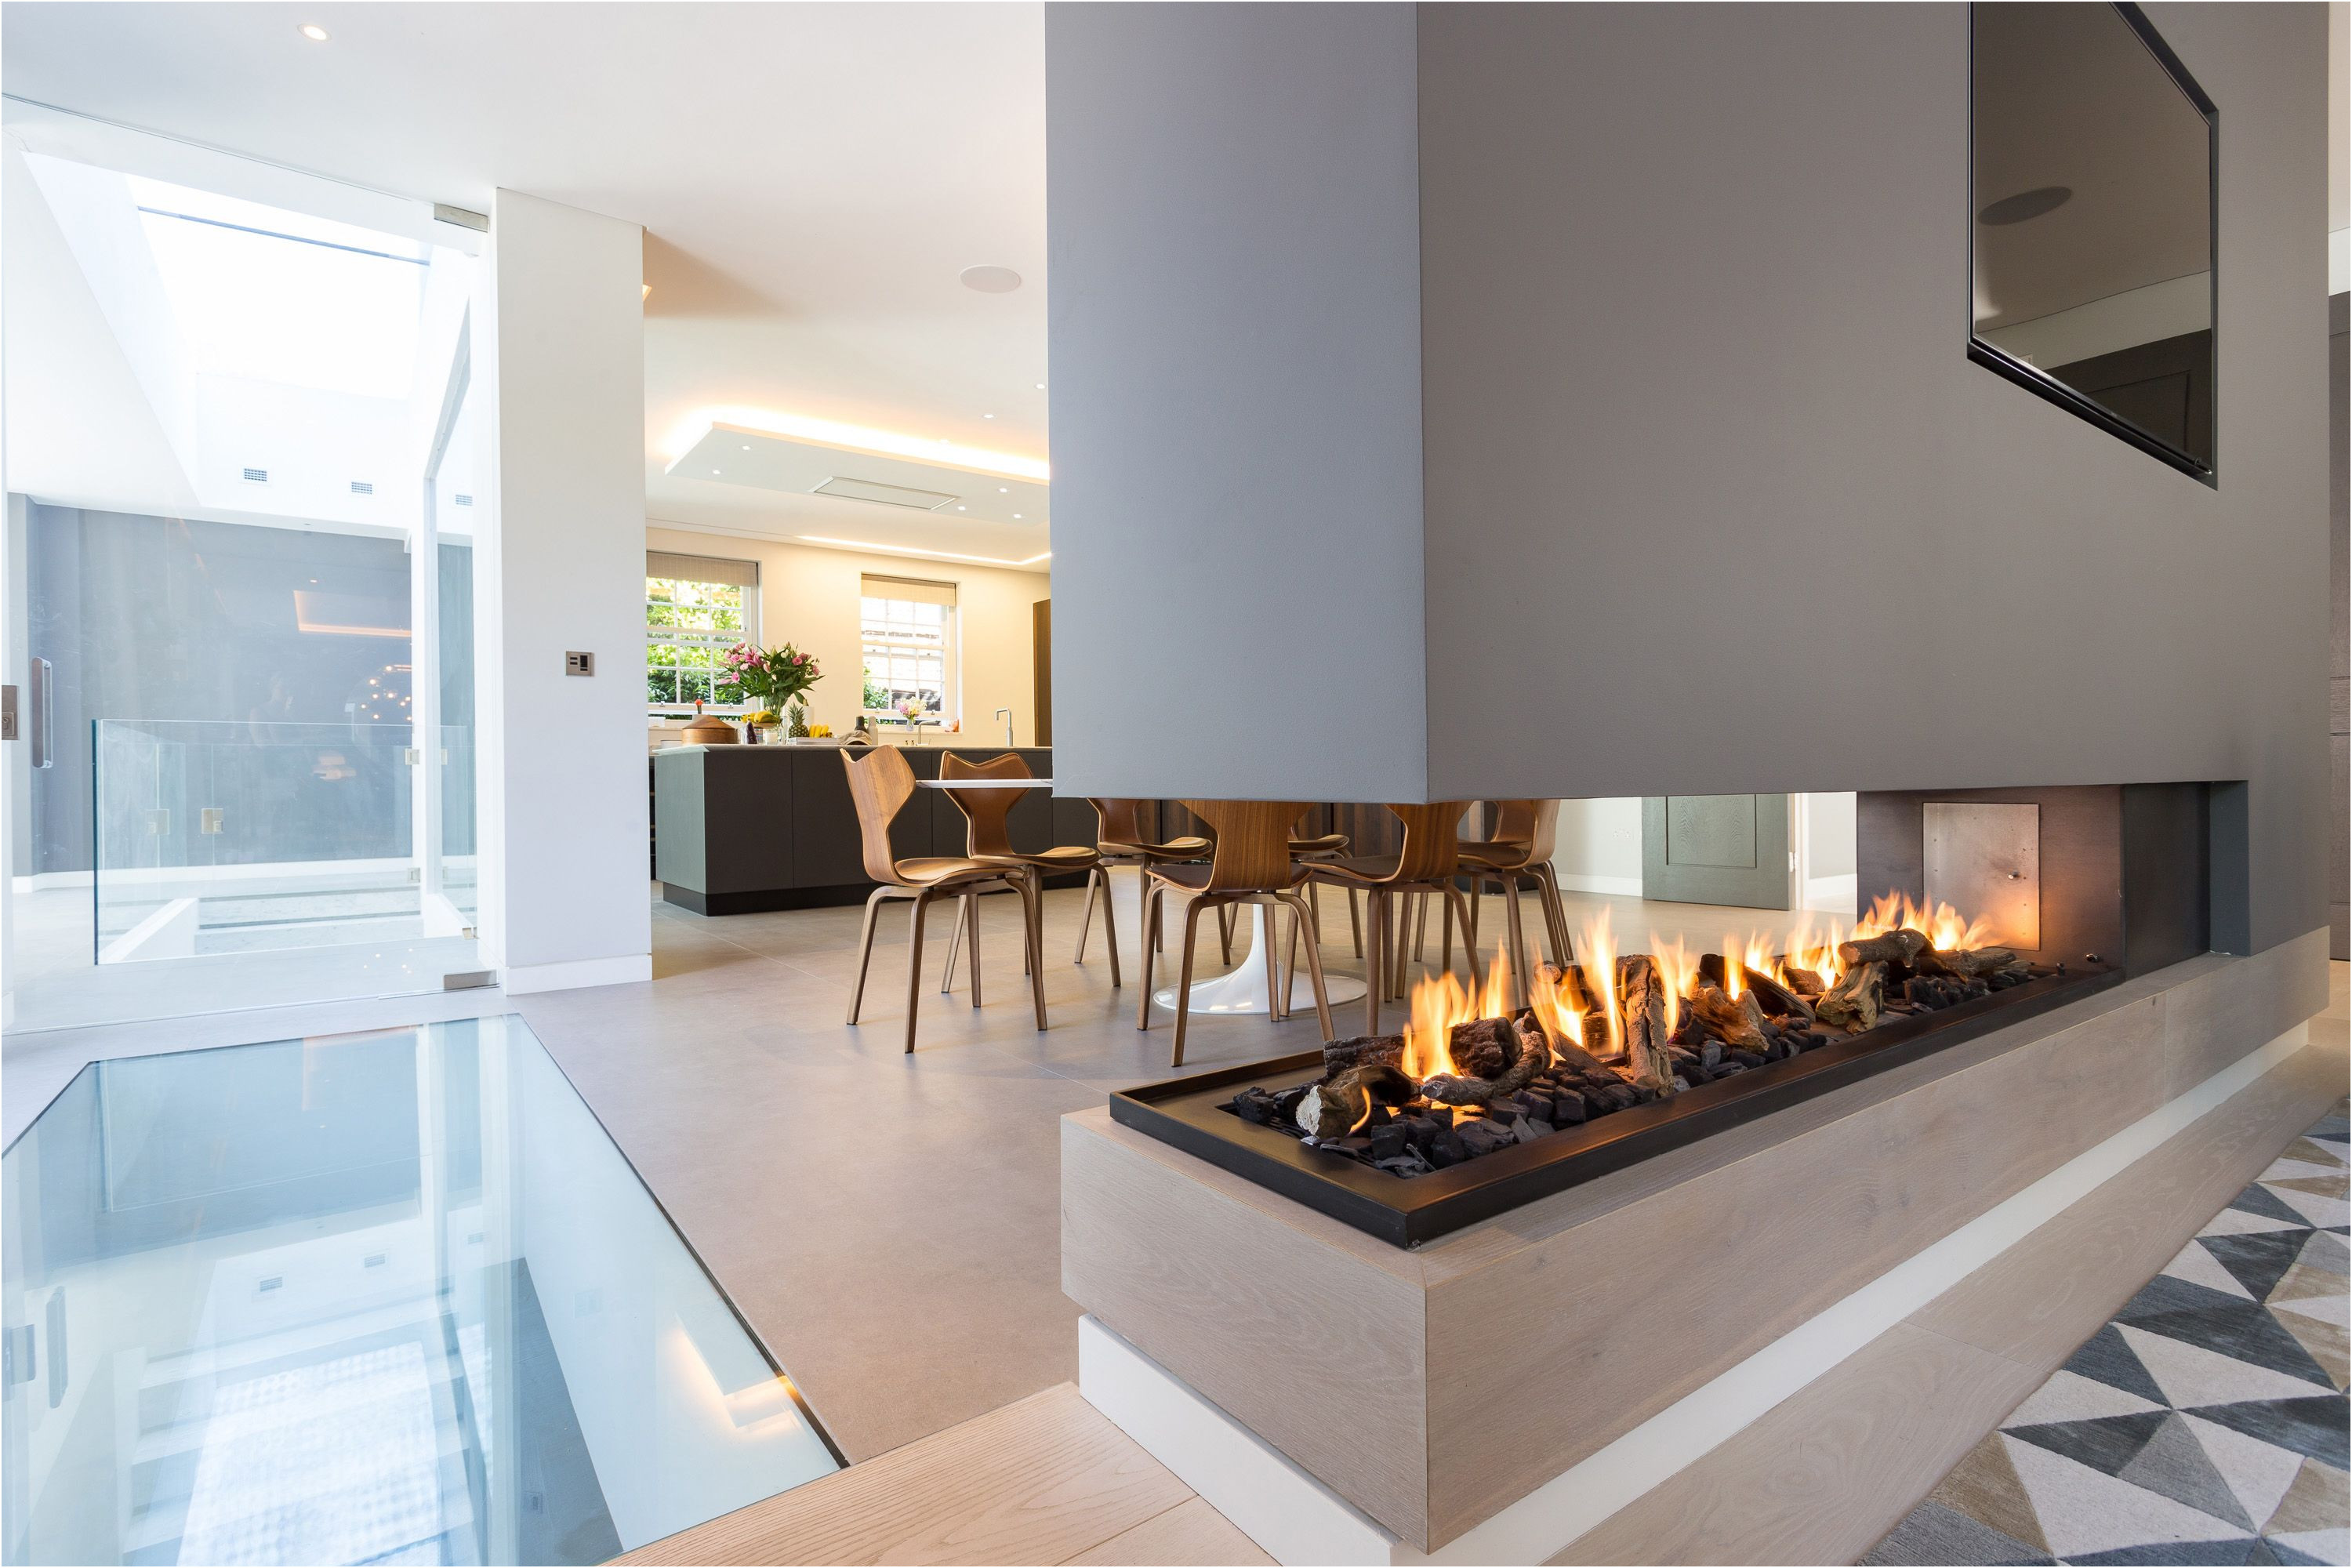 Beautiful Fireplace Modern Ideas